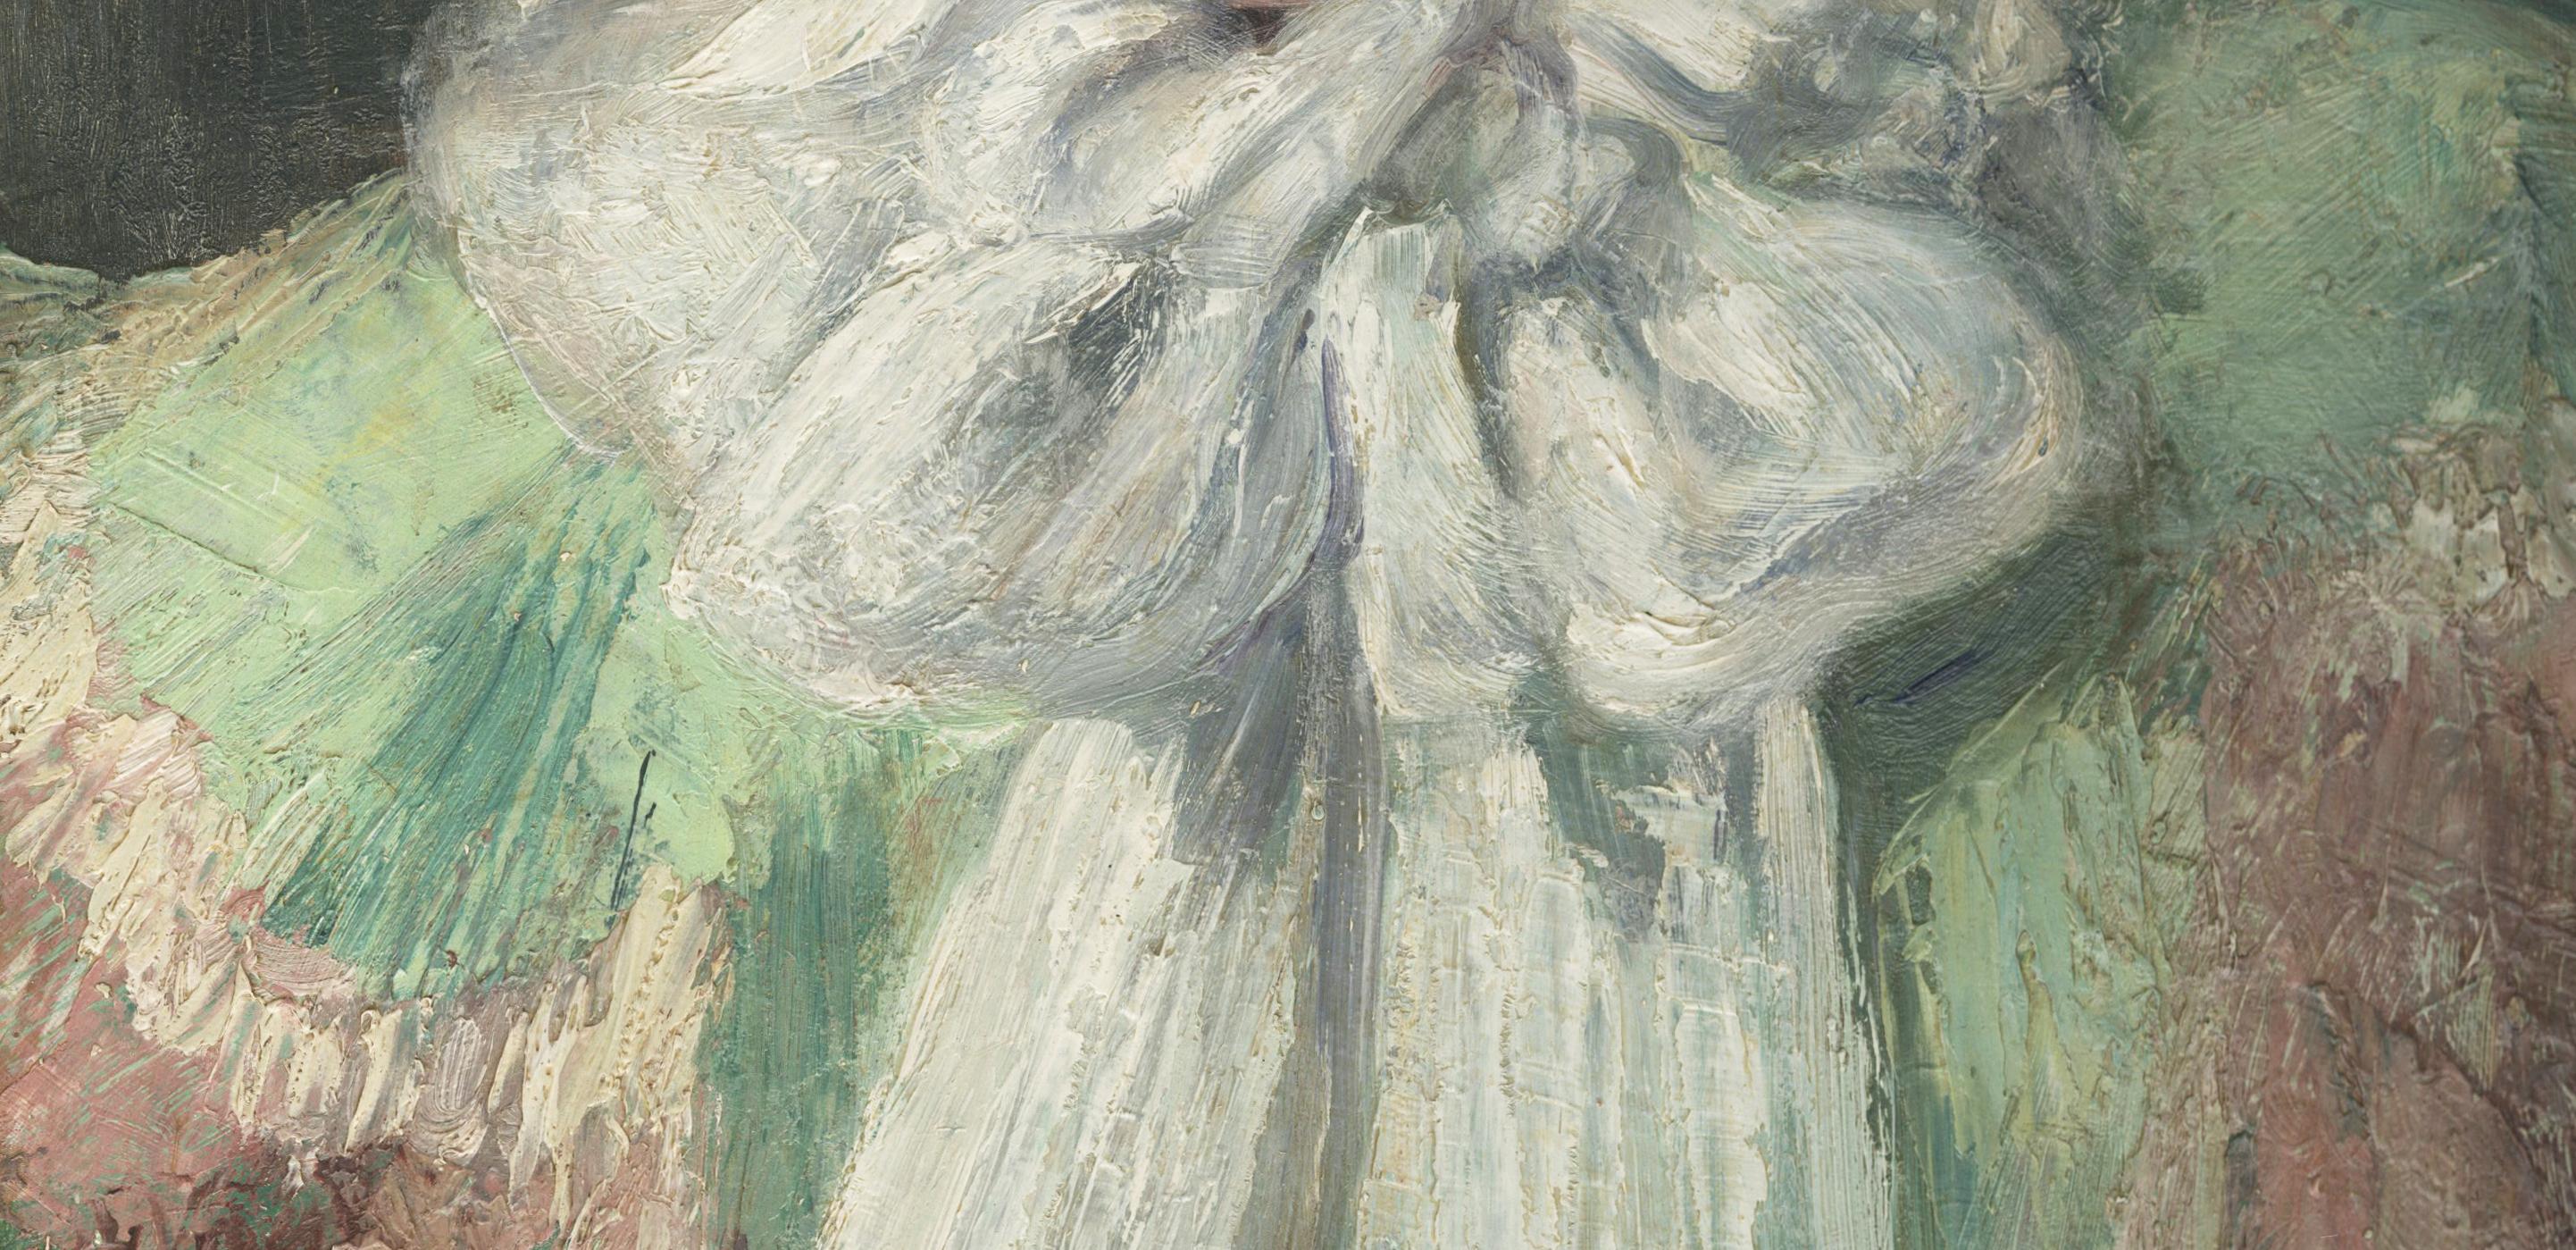 Le foulard blanc (autoportrait de l'artiste) - Gris Figurative Painting par Eugenie M. Heller